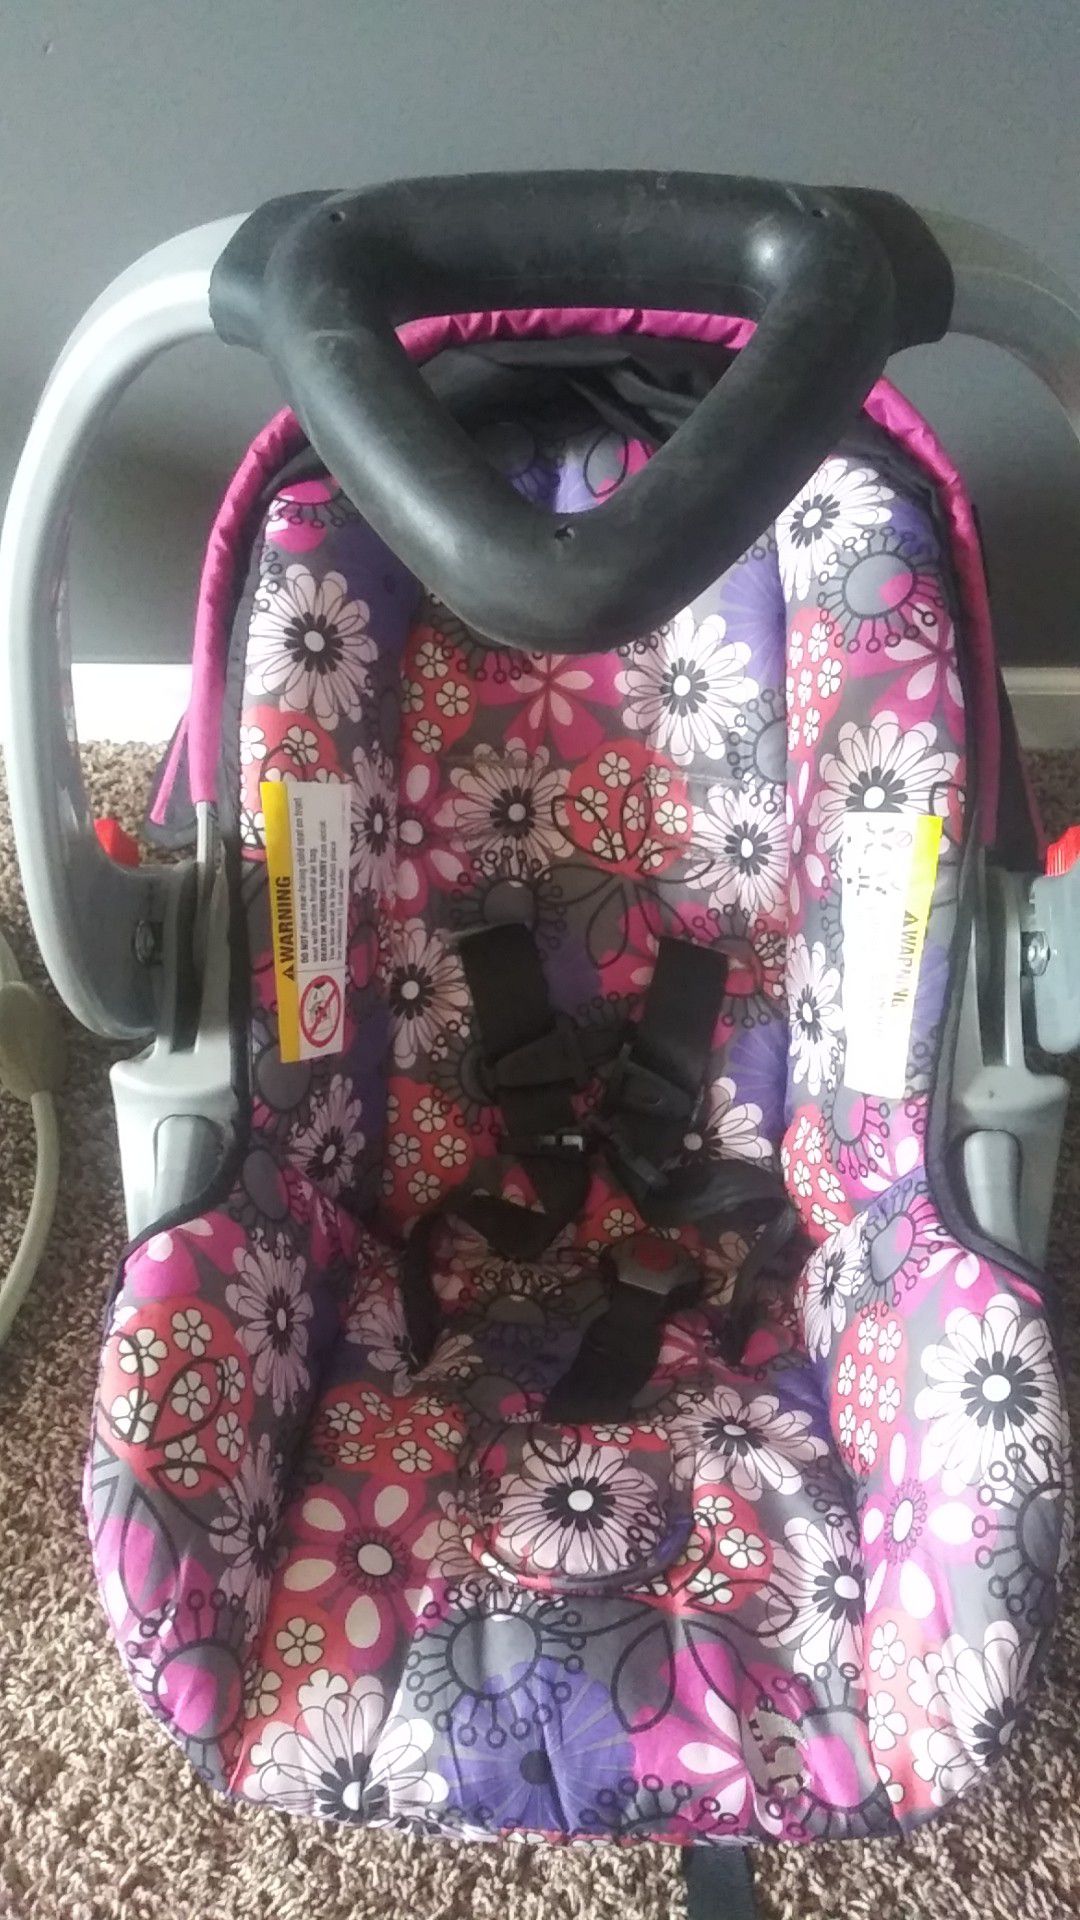 Girls car seat